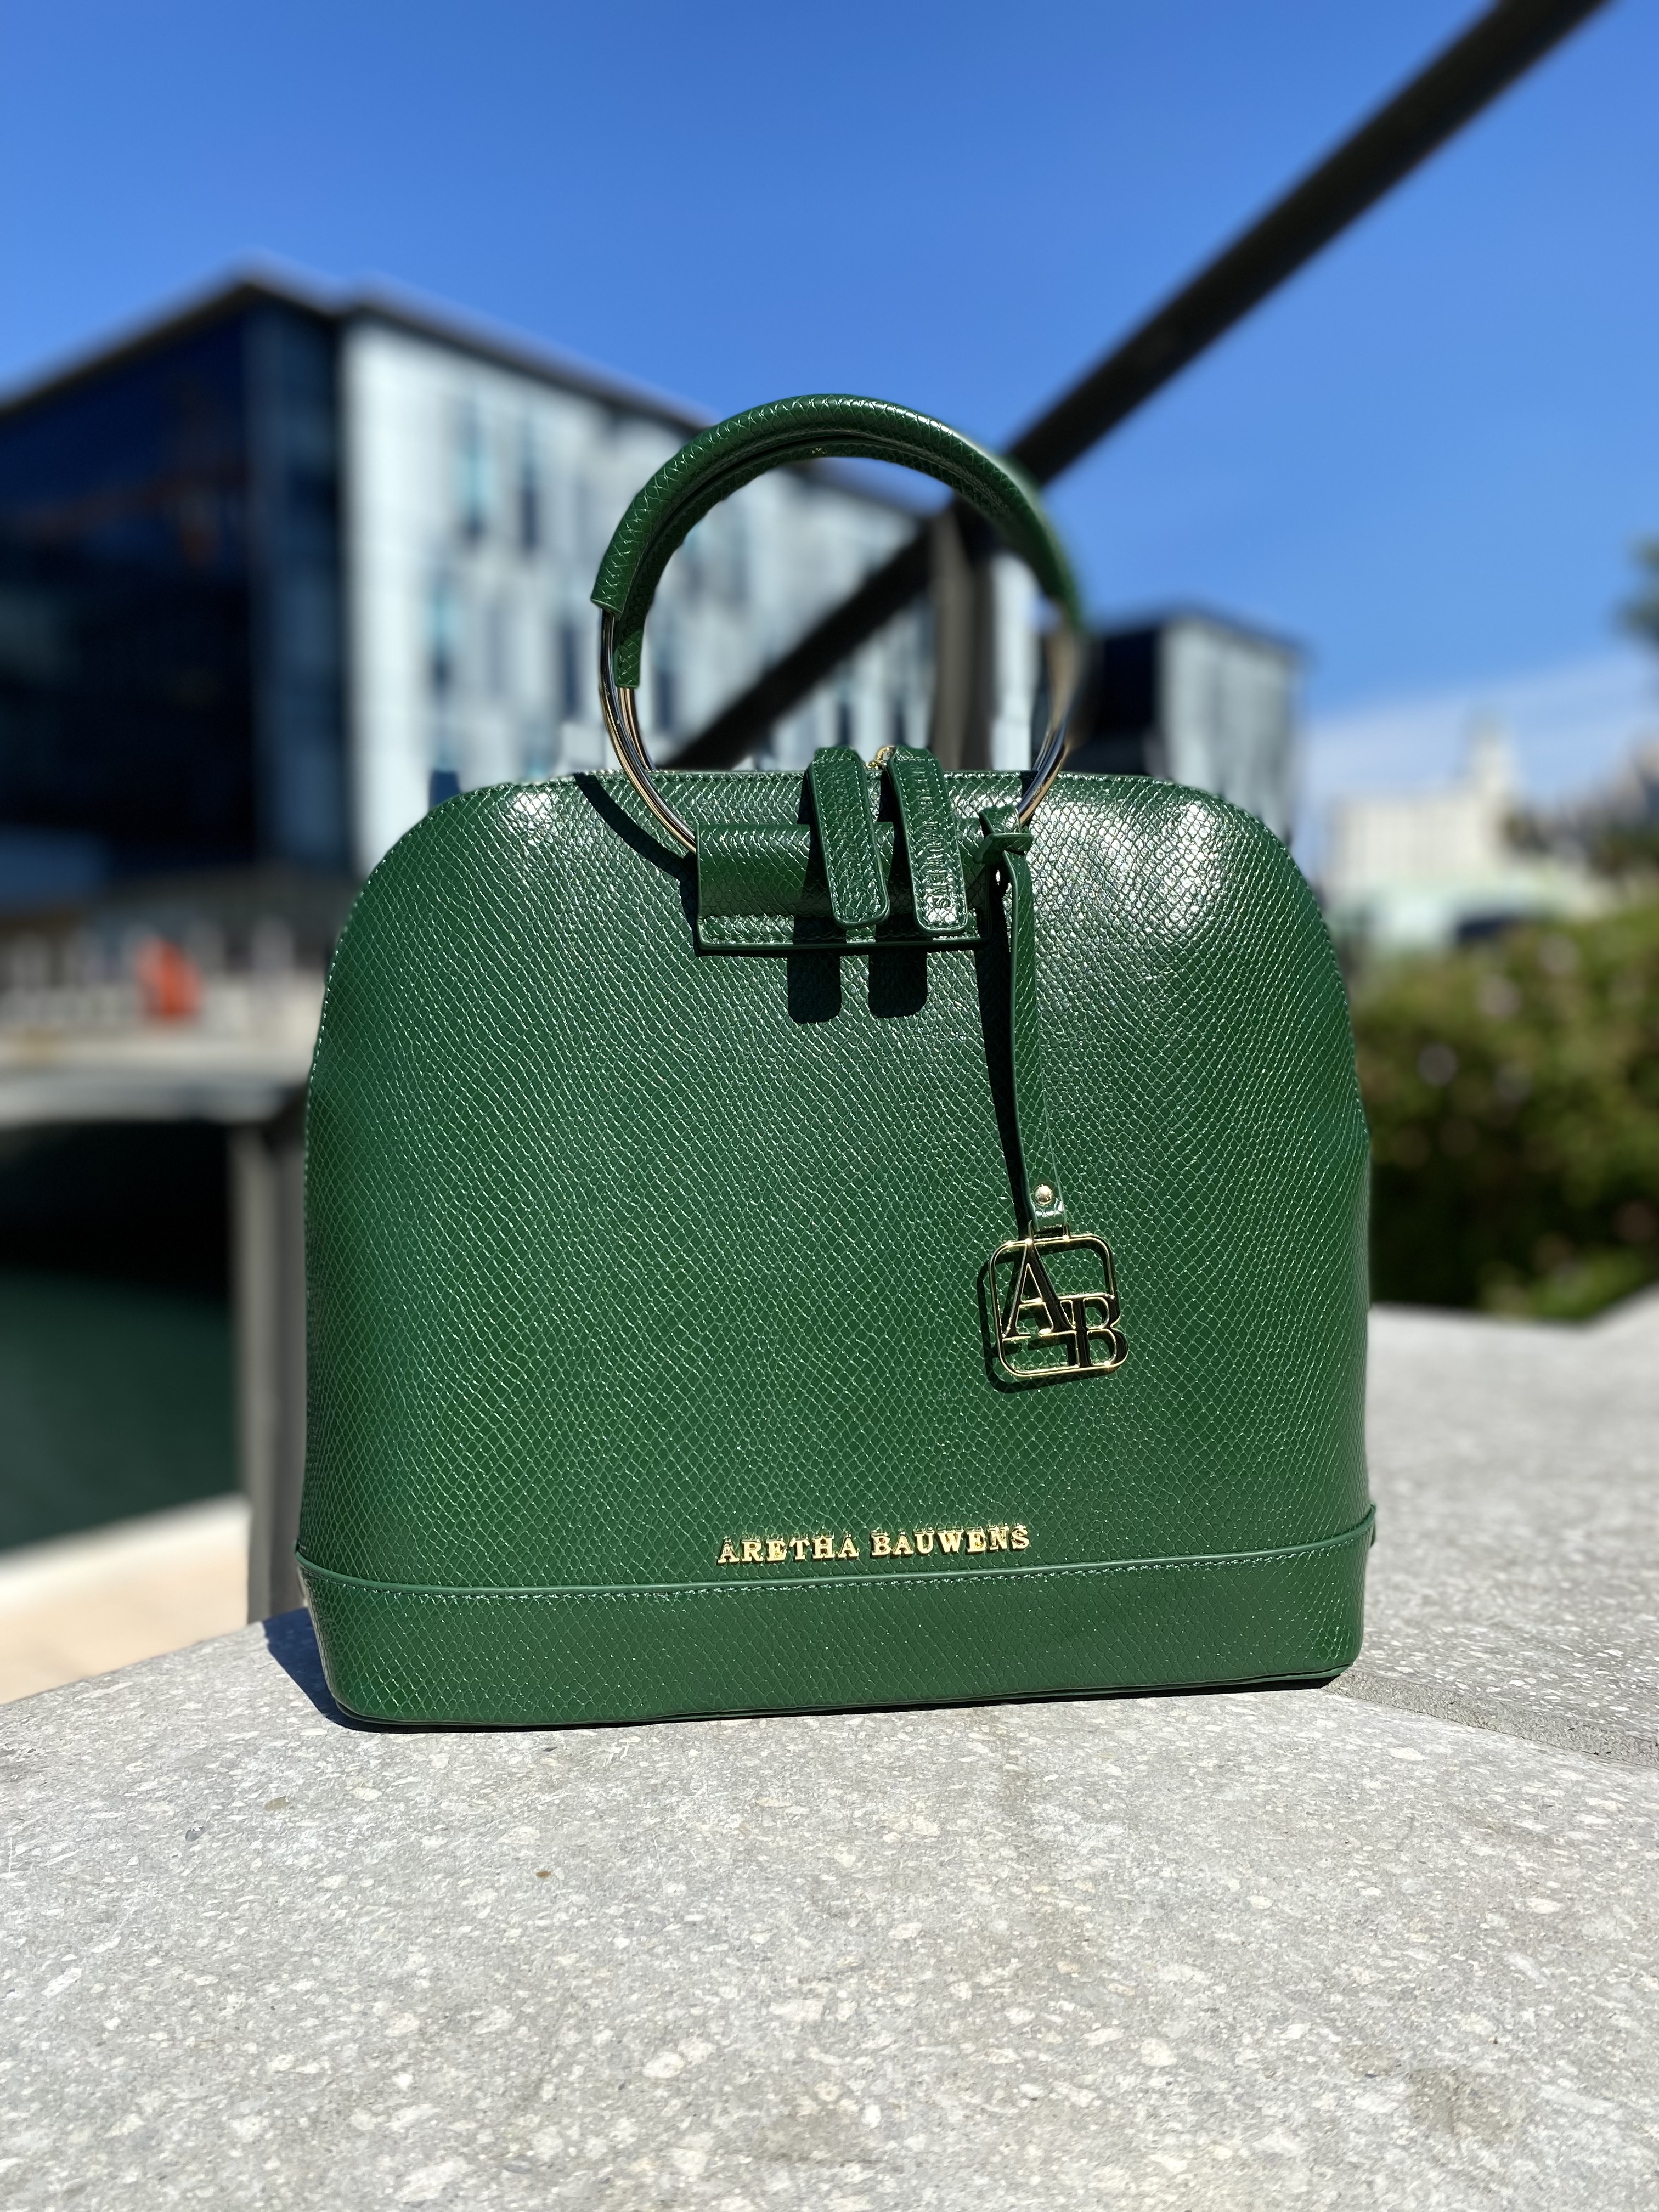 Louis Vuitton Epi Alma Bag Green